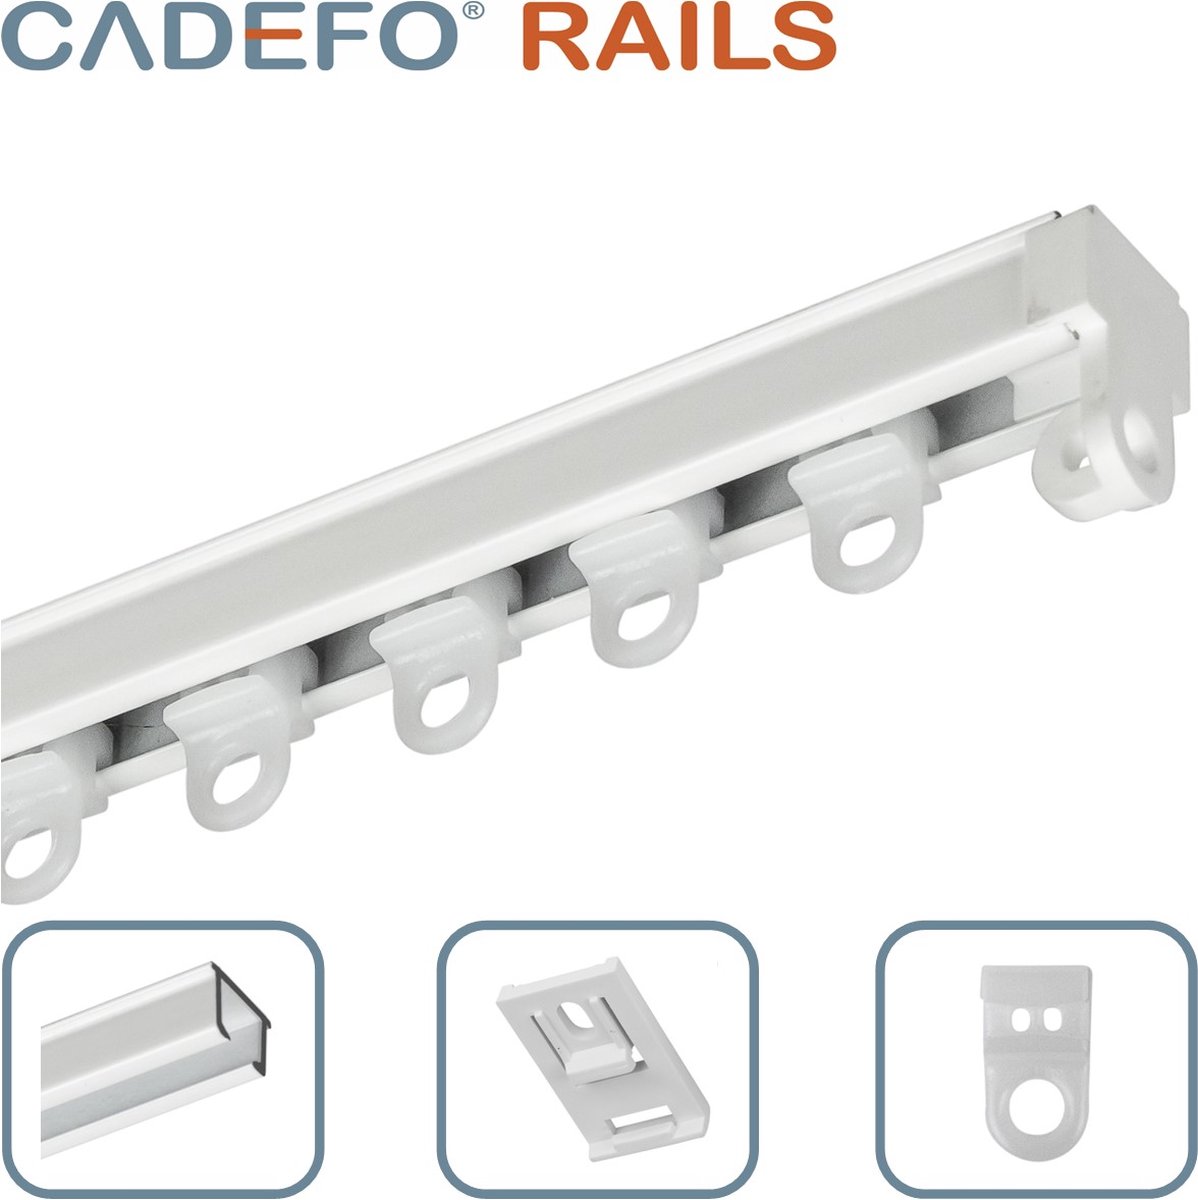 CADEFO RAILS (501 - 550 cm) Gordijnrails - Compleet op maat! - UIT 1 STUK - Leverbaar tot 6 meter - Plafondbevestiging - Lengte 516 cm